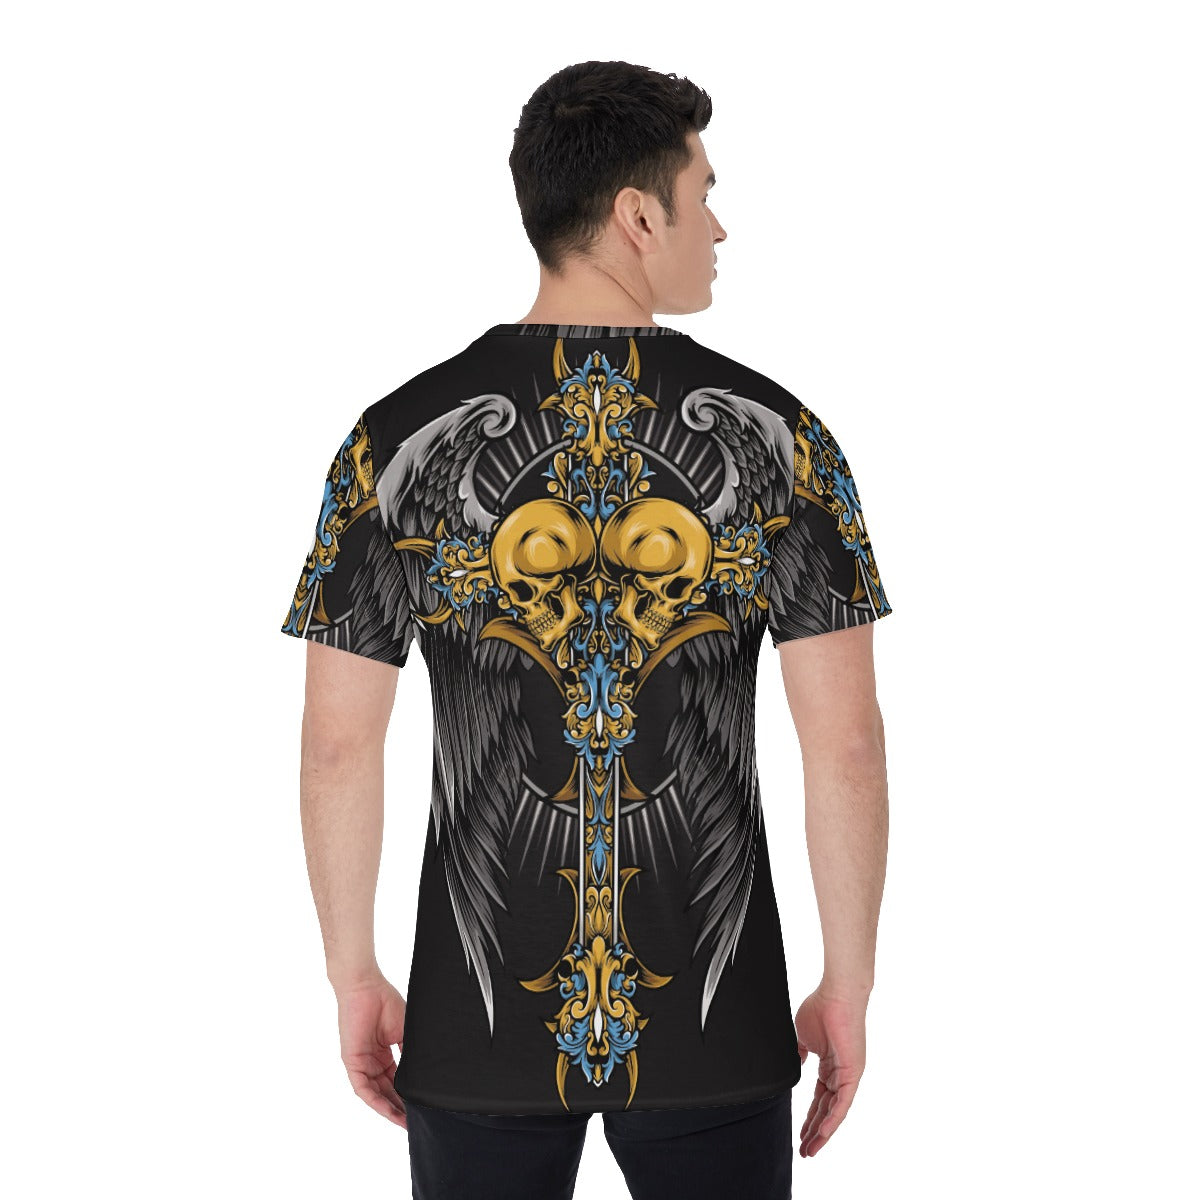 Gothic cross skull All-Over Print Men's O-Neck T-Shirt